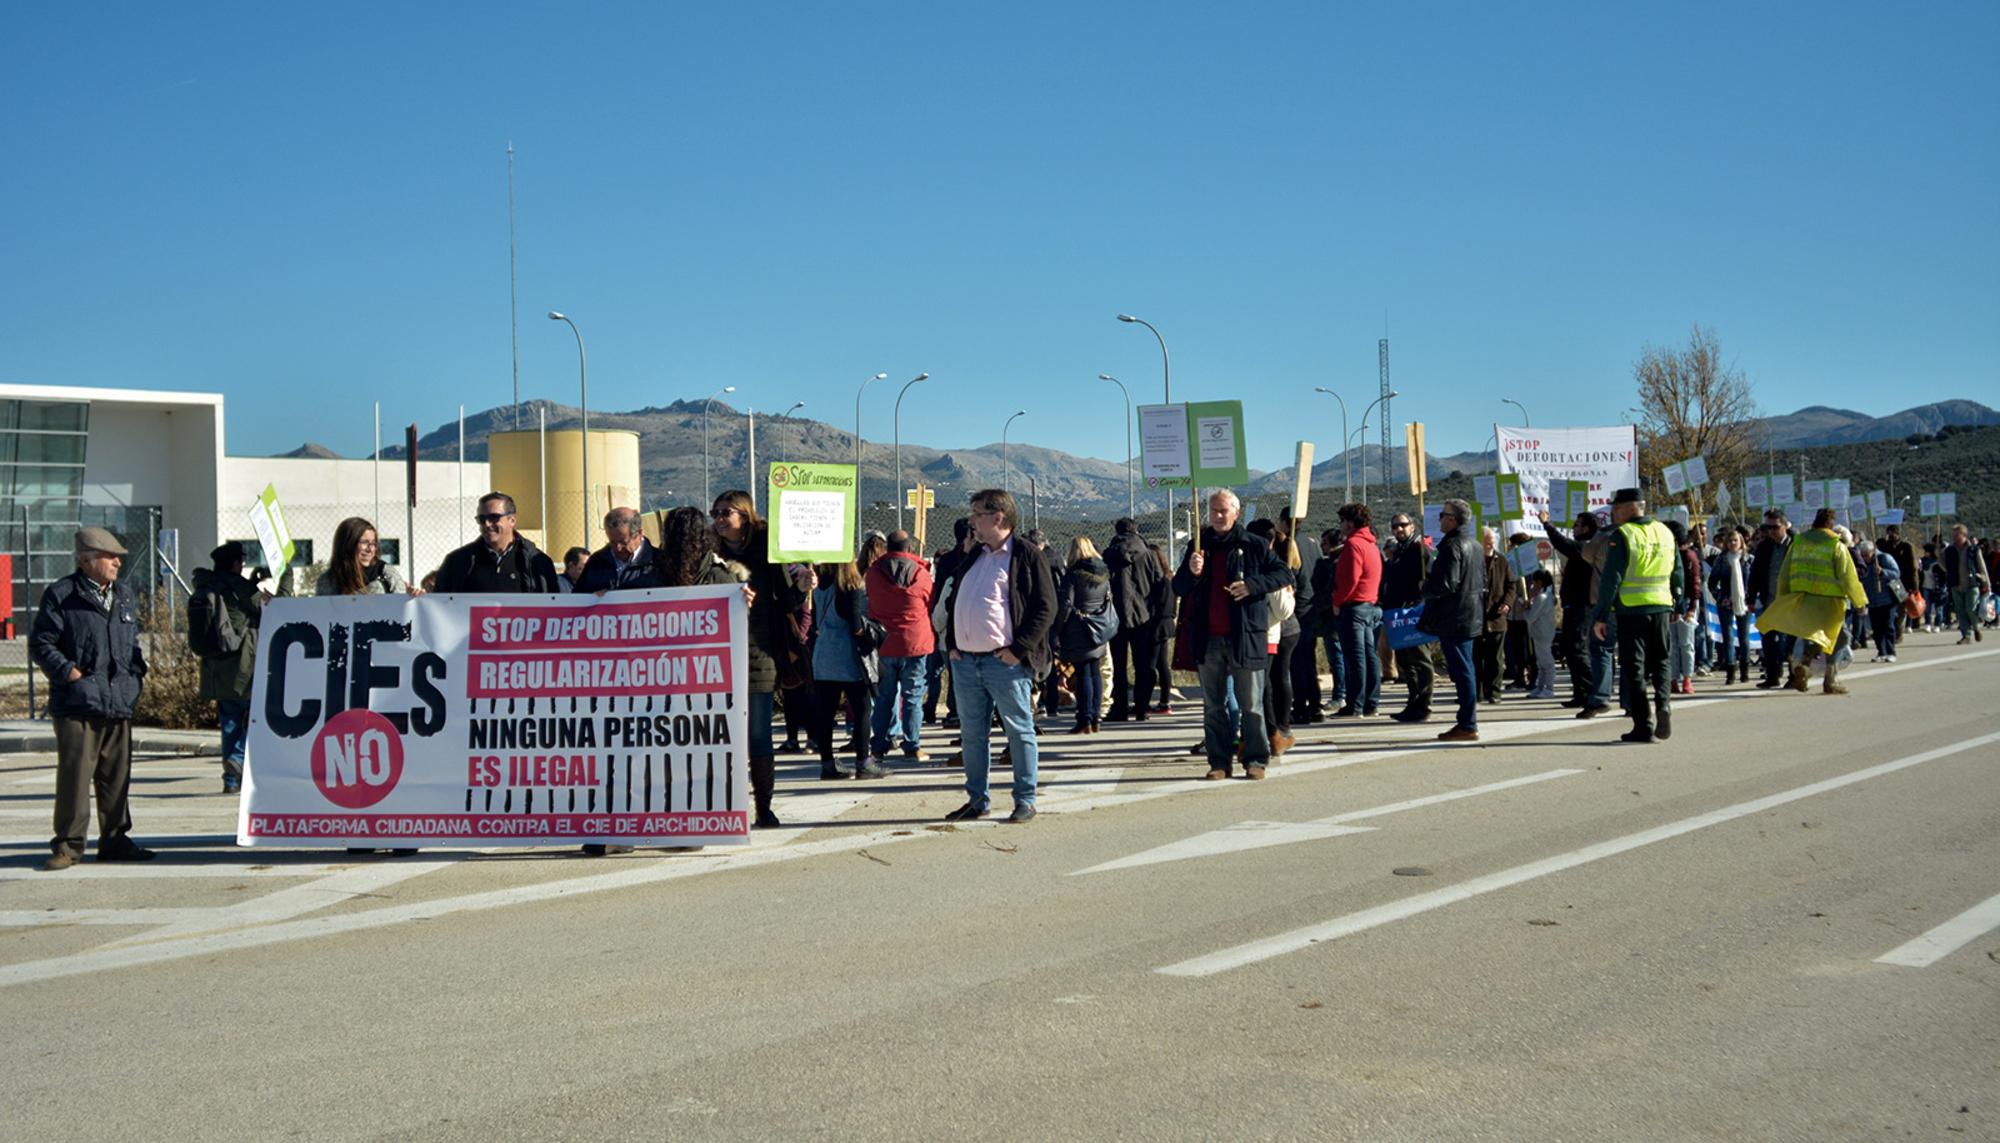 Protesta frente centro penitenciario de Málaga II de Archidona 2